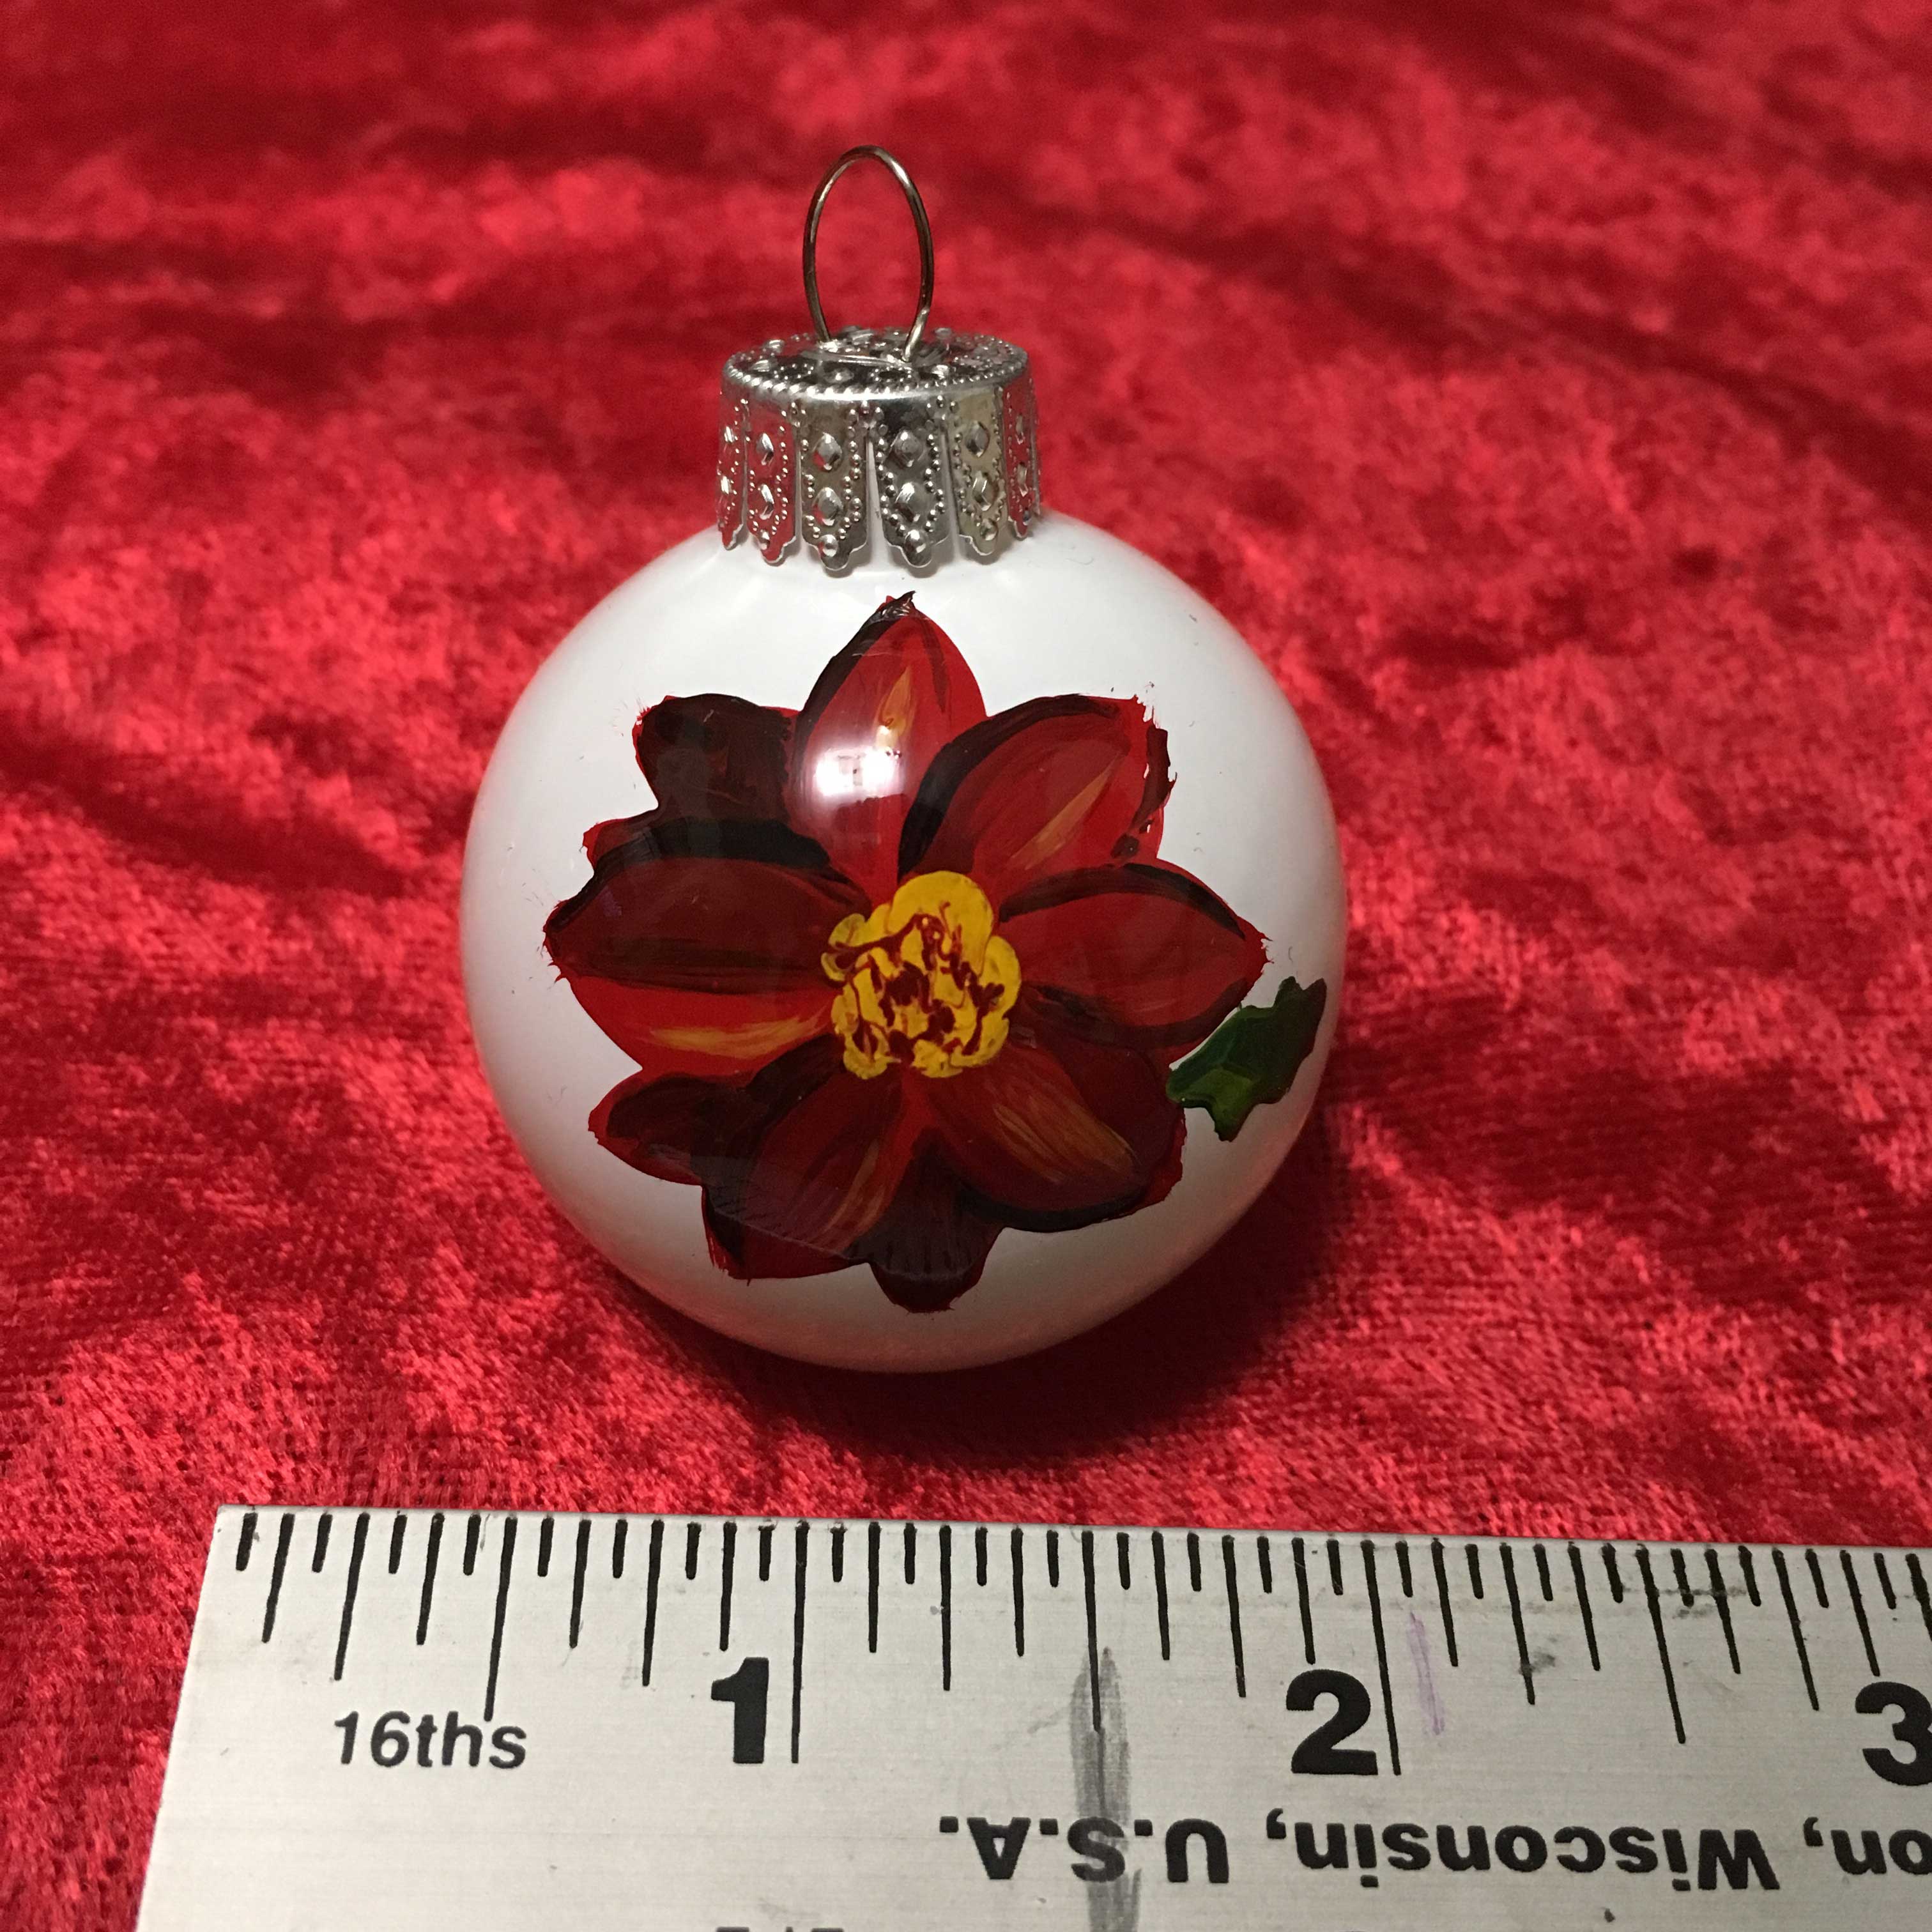 Red Poinsettia ornament